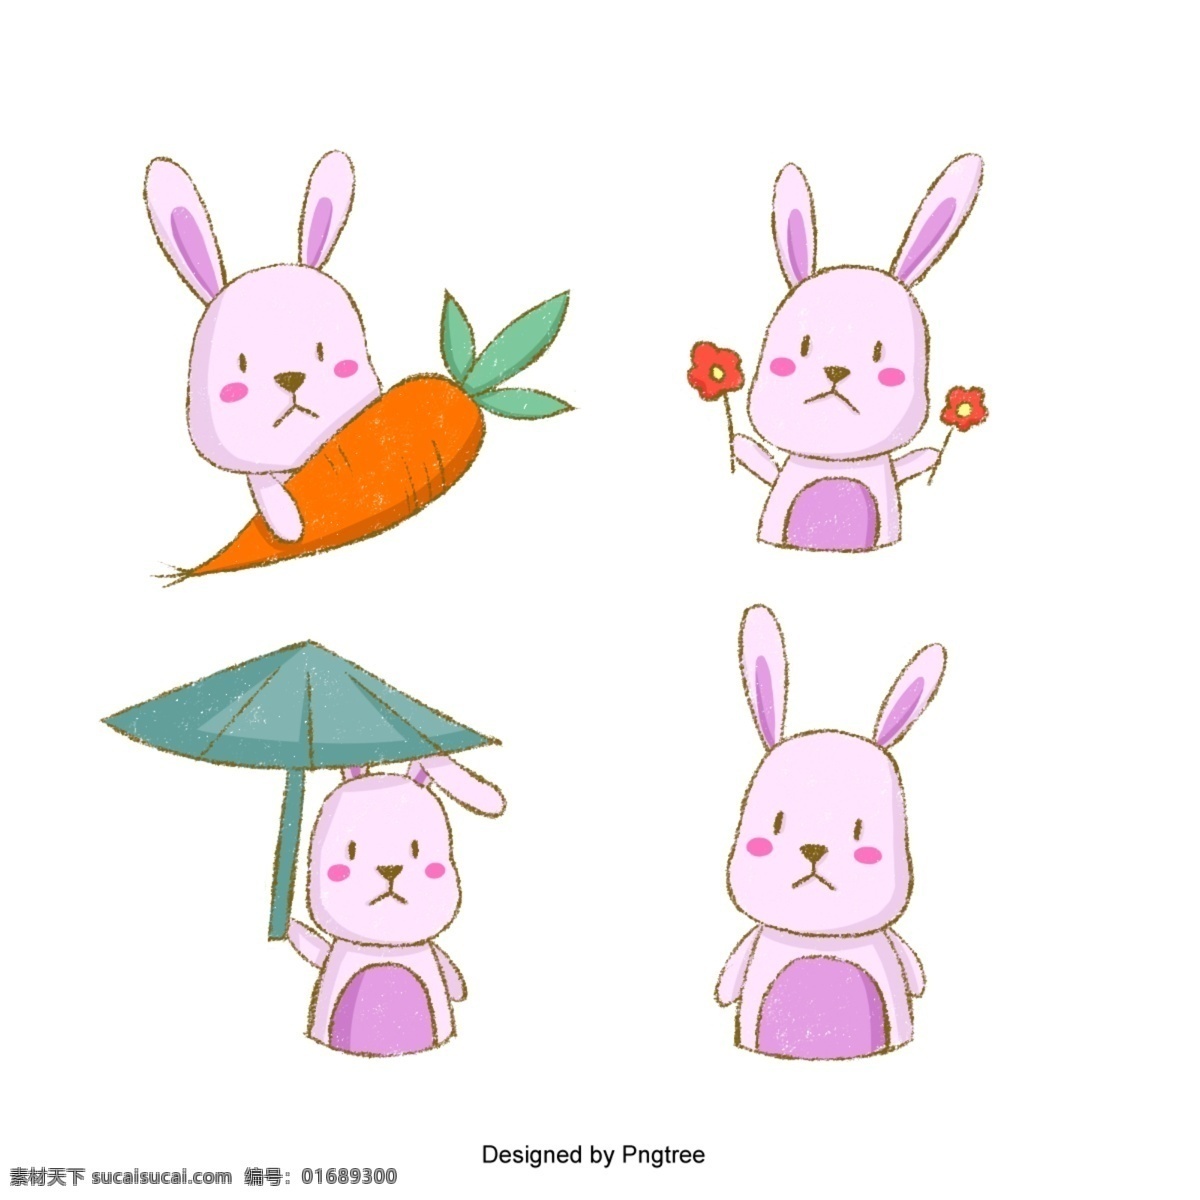 可爱 的卡 通 粉红 兔子 矢量 卡通 动物 情绪 粉色 胡萝卜 哺乳动物 花 荷叶